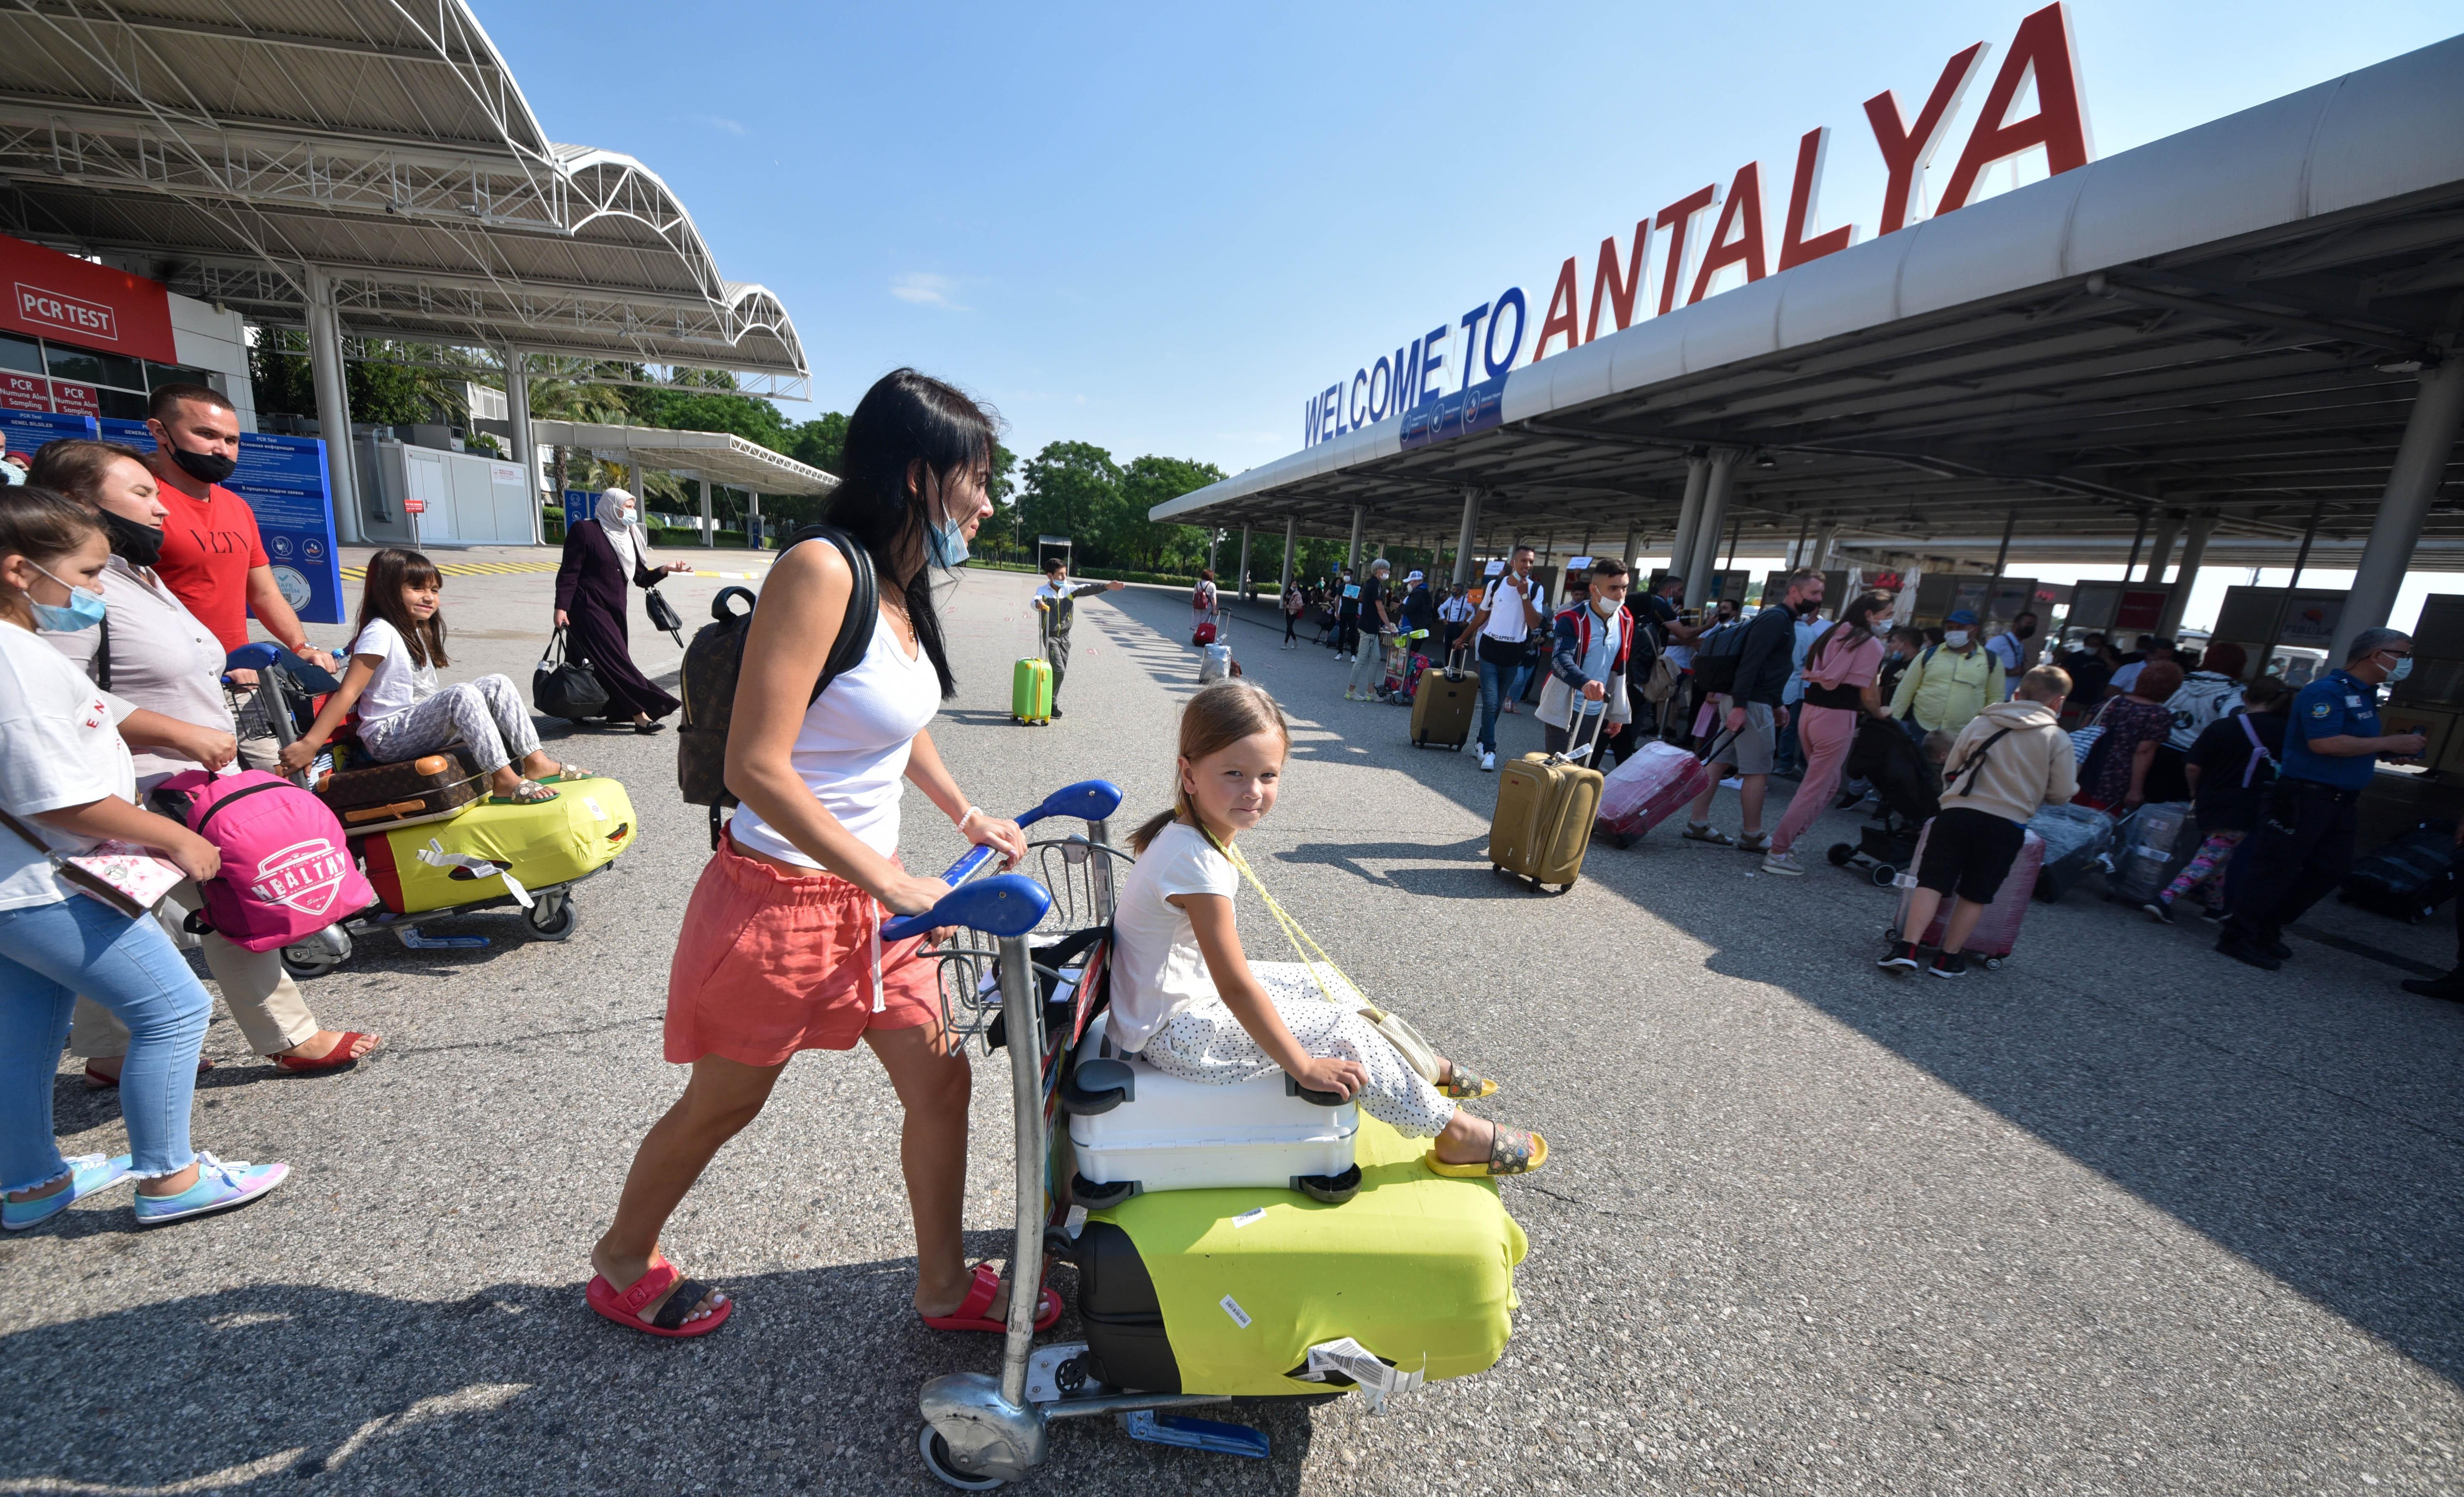 Antalyada turist sayısı 9 milyona yaklaştı